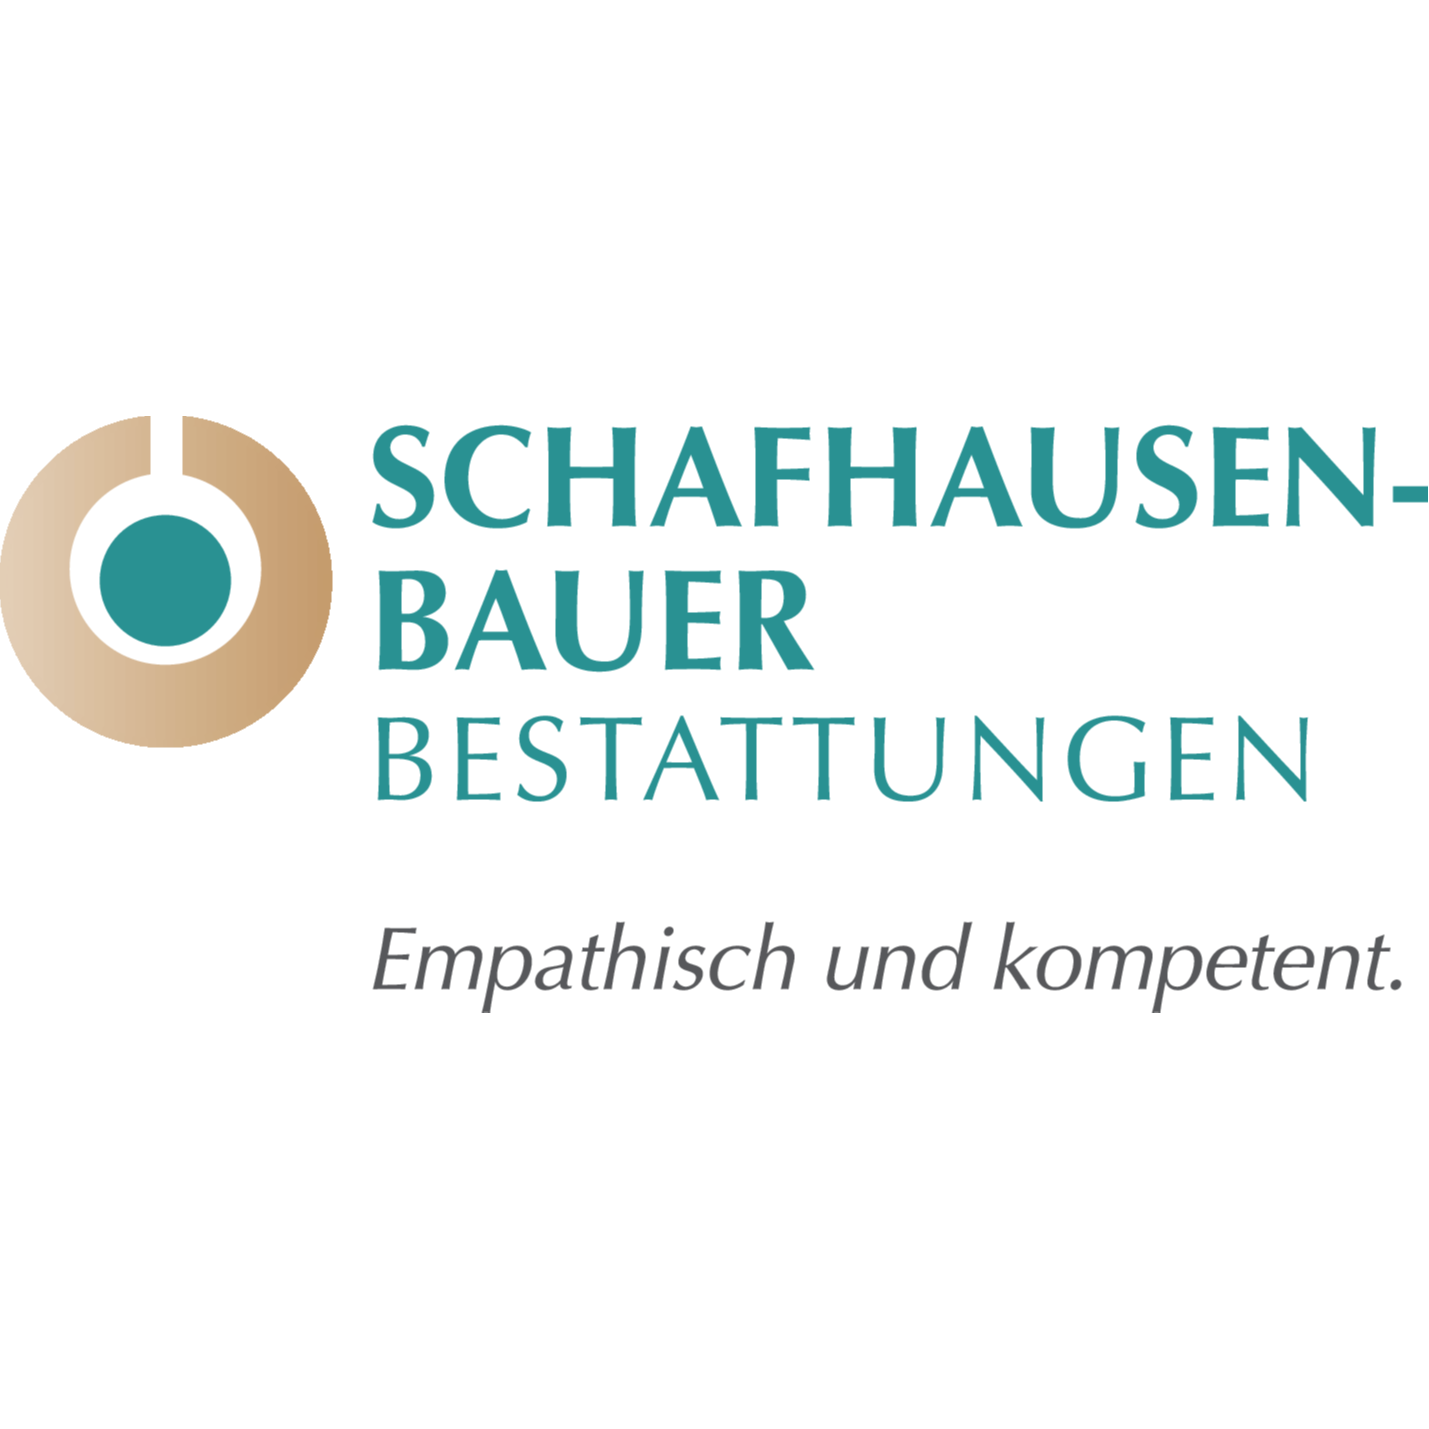 Schafhausen-Bauer Bestattungen in Düsseldorf - Logo